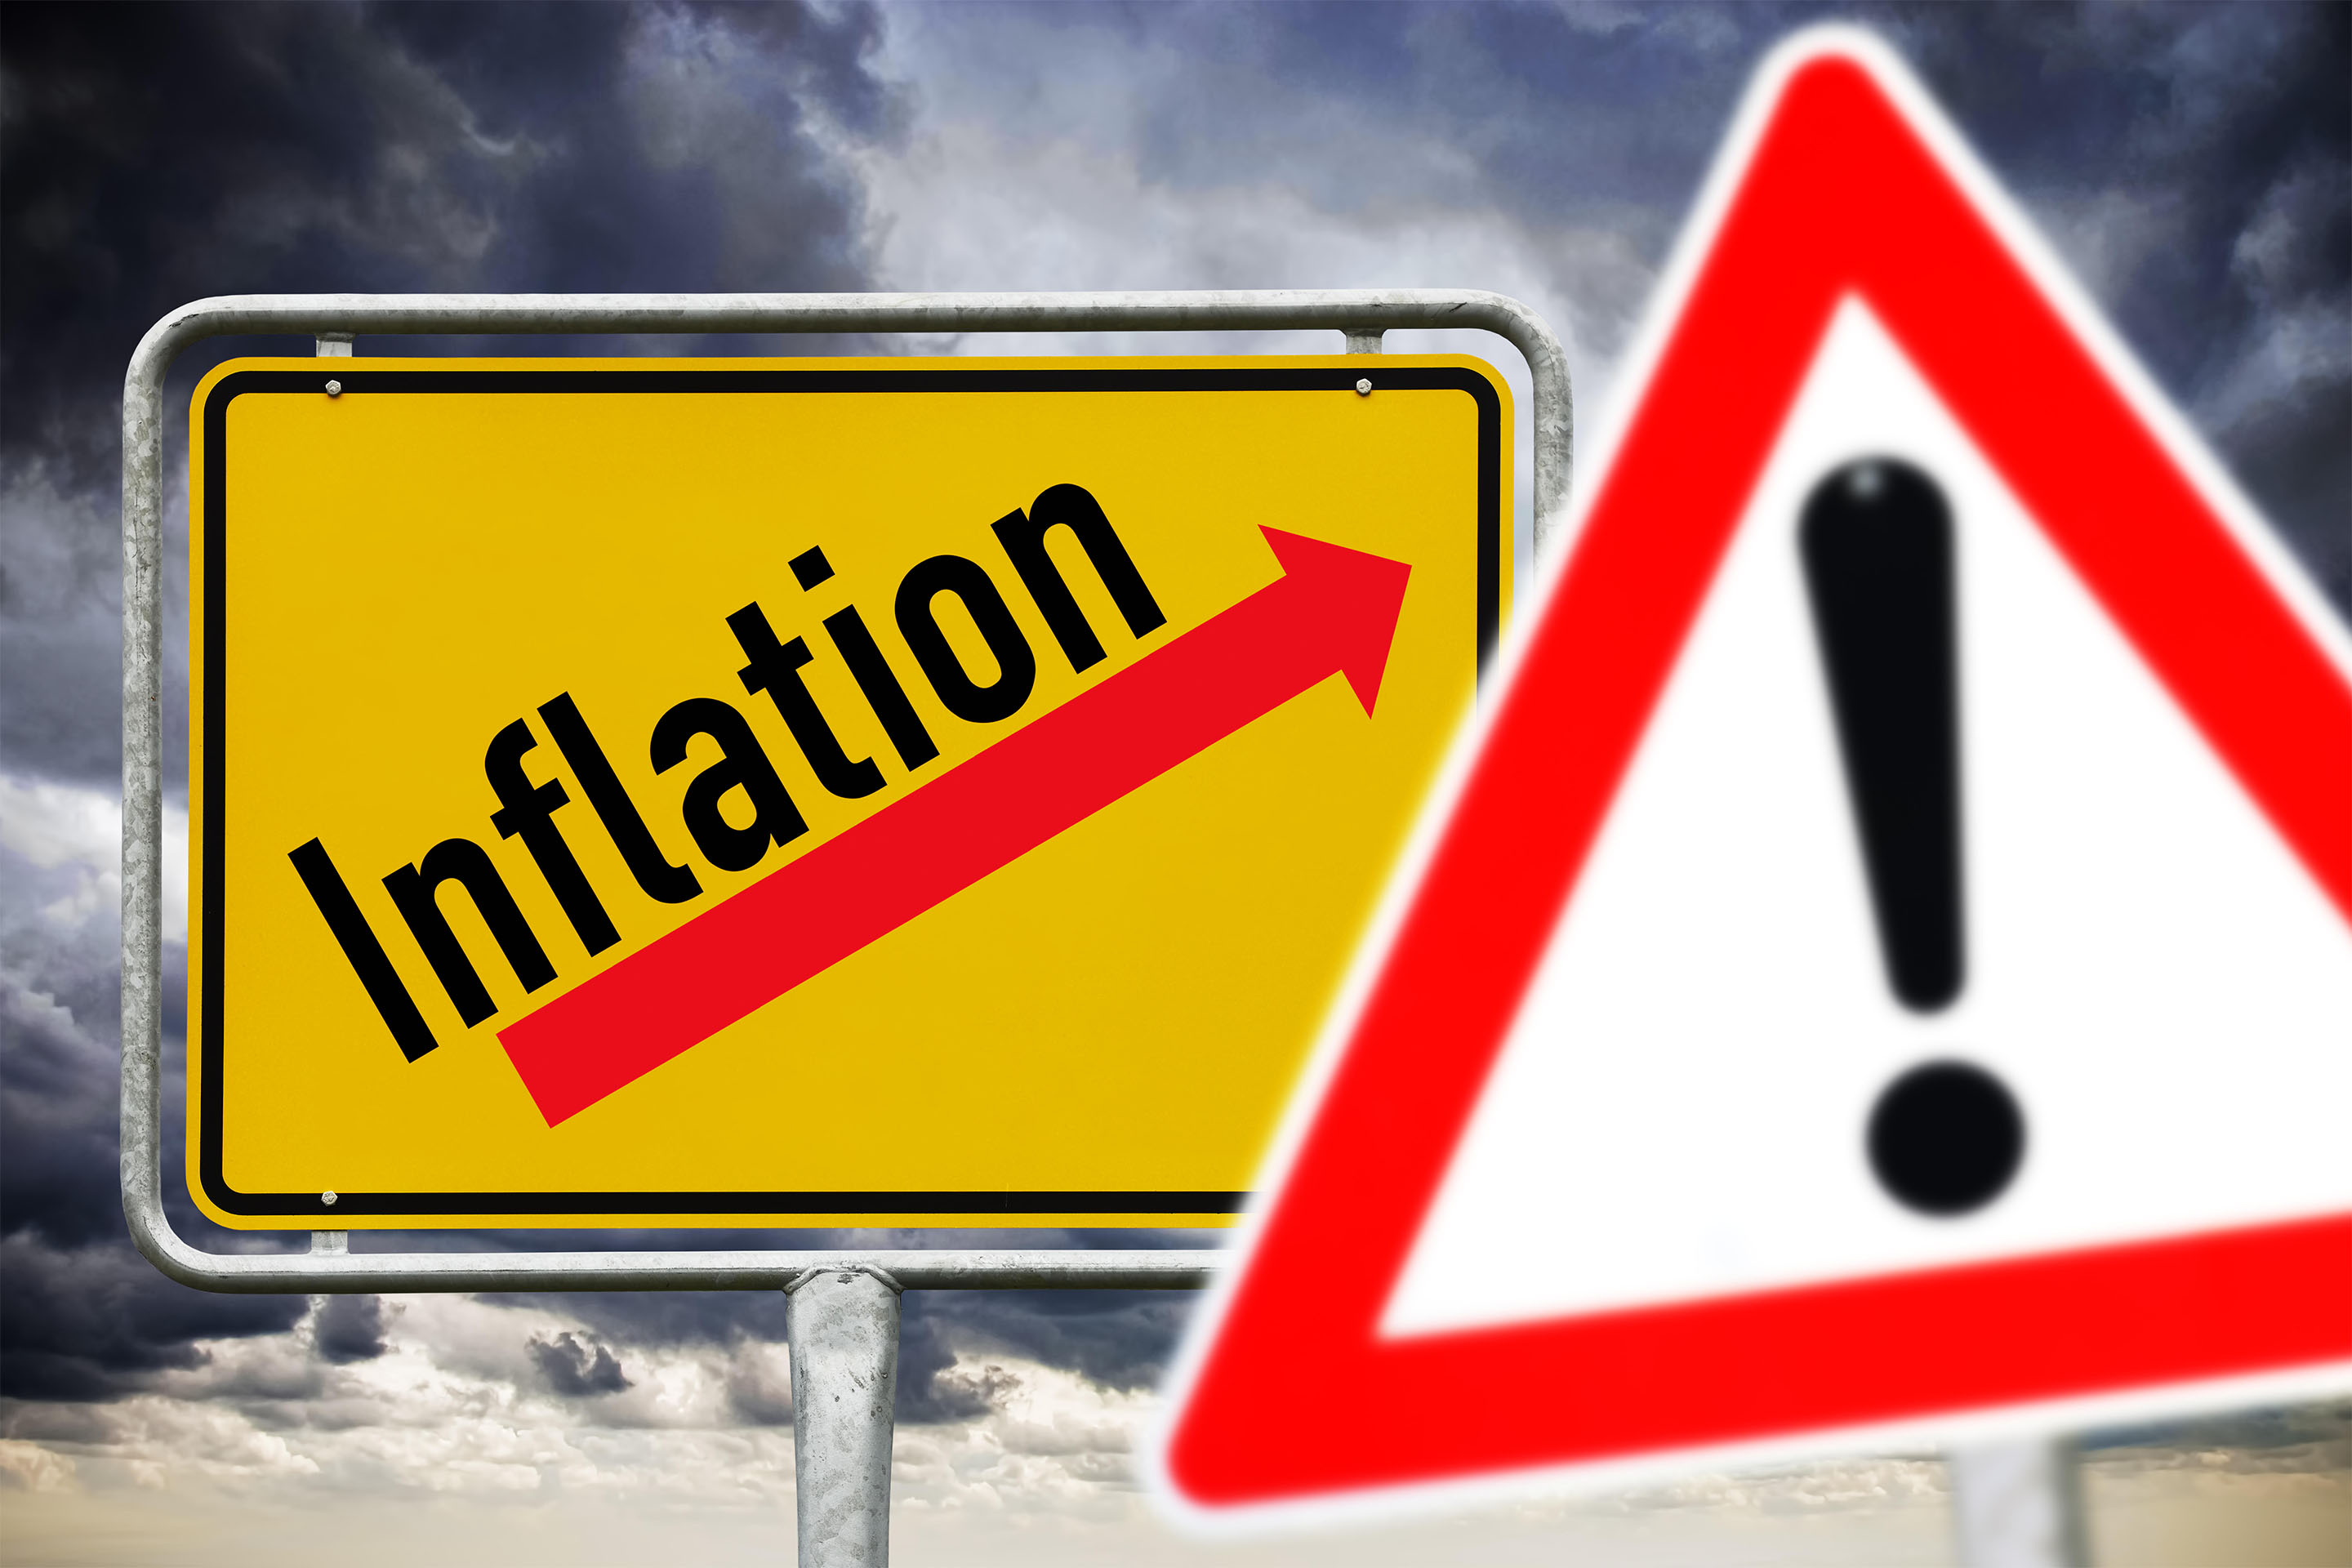 FOTOMONTAGE, Ortsschild Inflation und Gefahrenschild, Anstieg der Inflationsrate - Inflationsmonitor